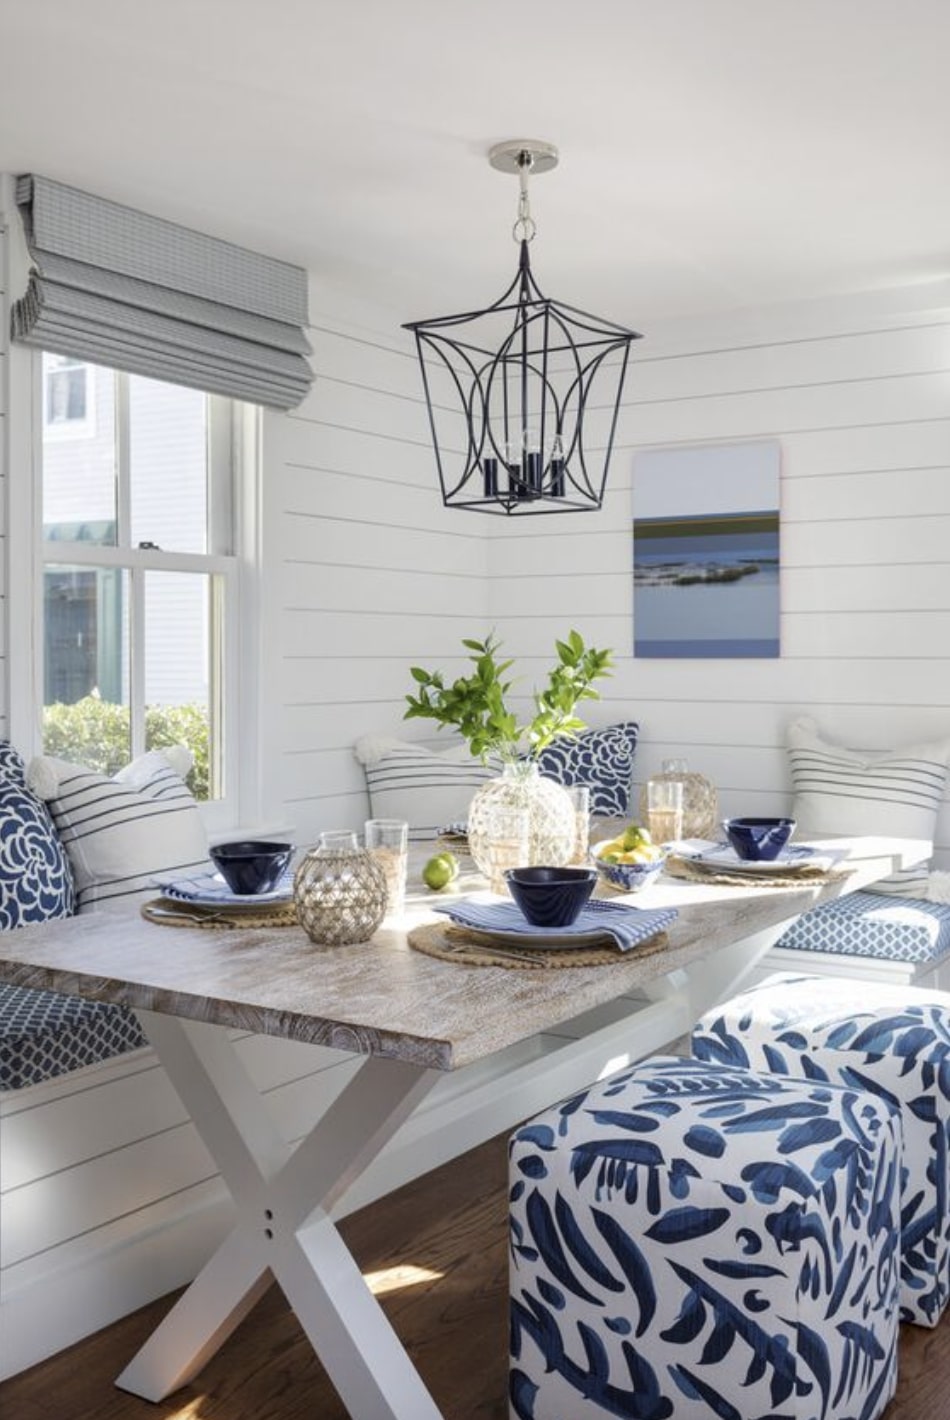 μπλε κουζίνα άσπρη καλοκαίρι καλοκαιρινή τραπεζαρία εξοχικό διακόσμηση άσπρο ξύλο